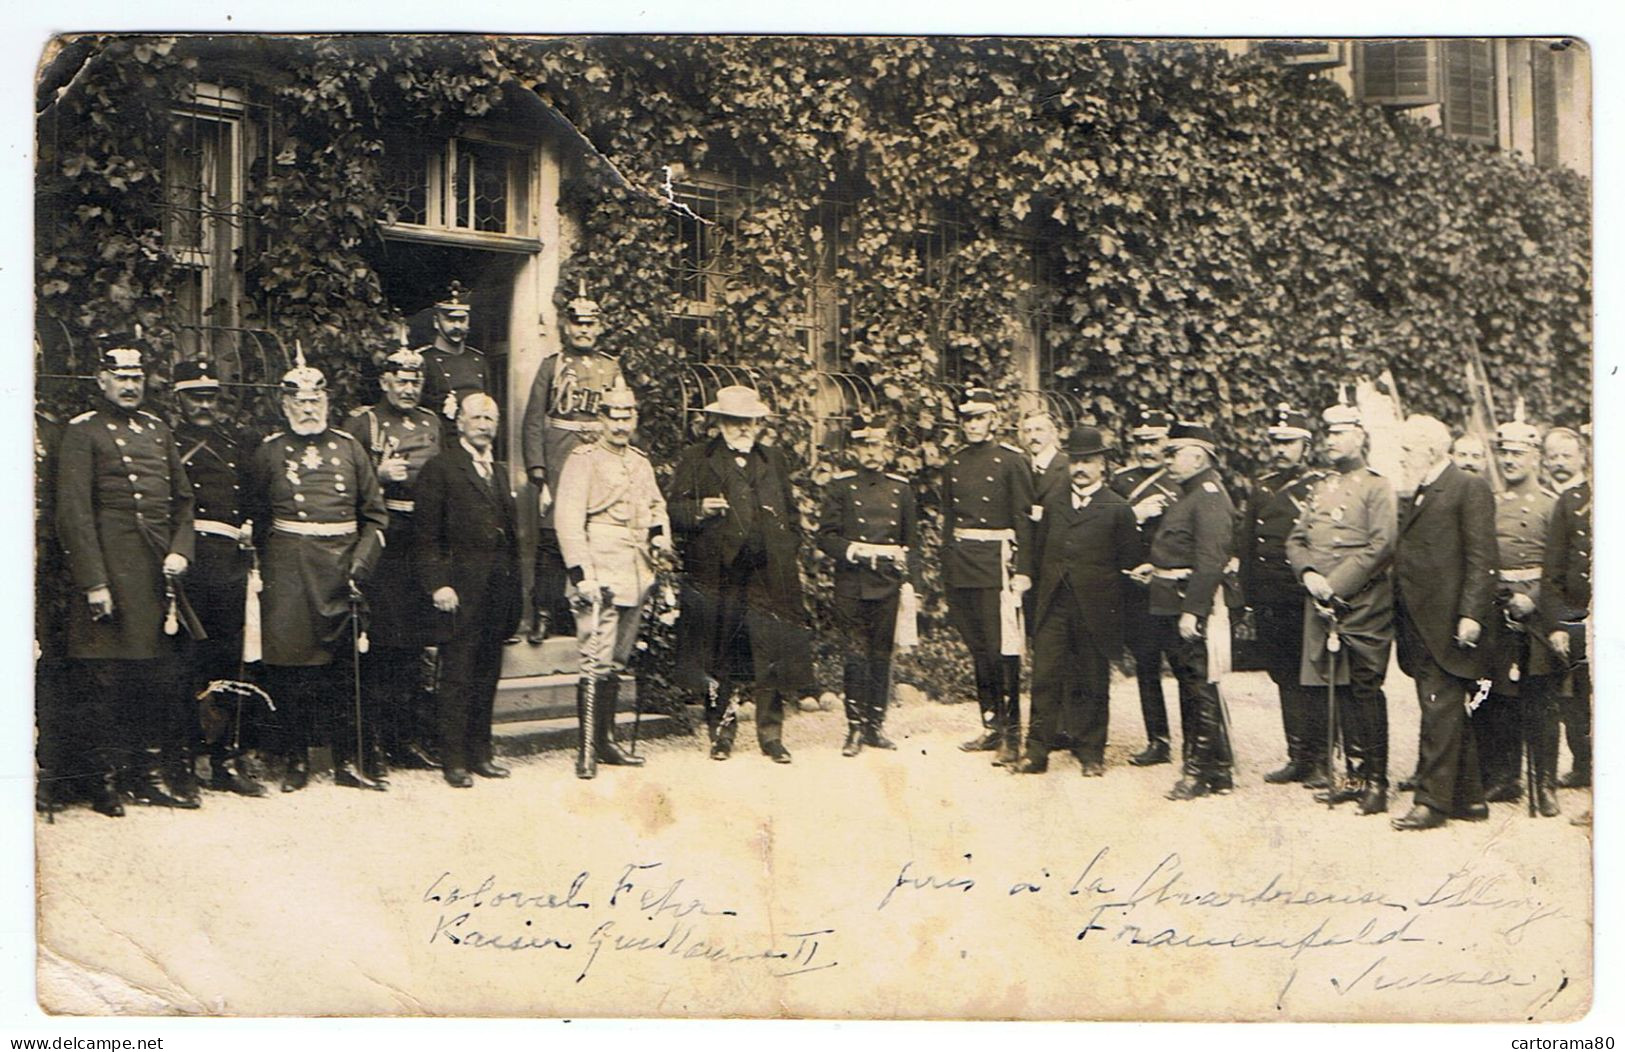 Warth-Weiningen / Carte-photo / Guillaume II Et Le Colonel Fehr / Chartreuse D'Ittingen, Le 4 Septembre 1912 / Etat - Evènements